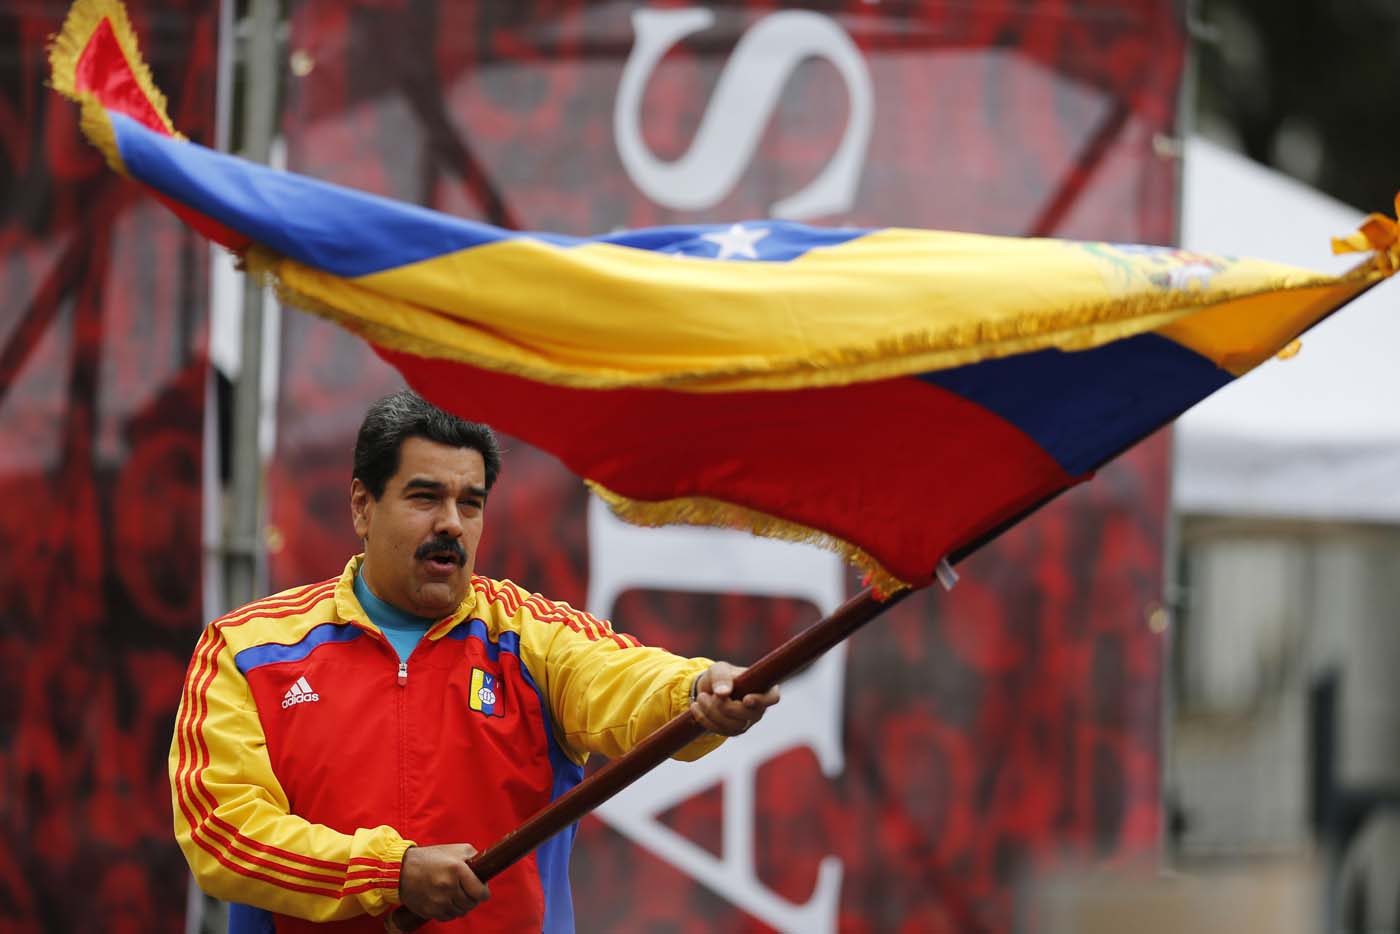  Asegura Maduro que seguirá en el poder “por lo menos hasta el 2018”